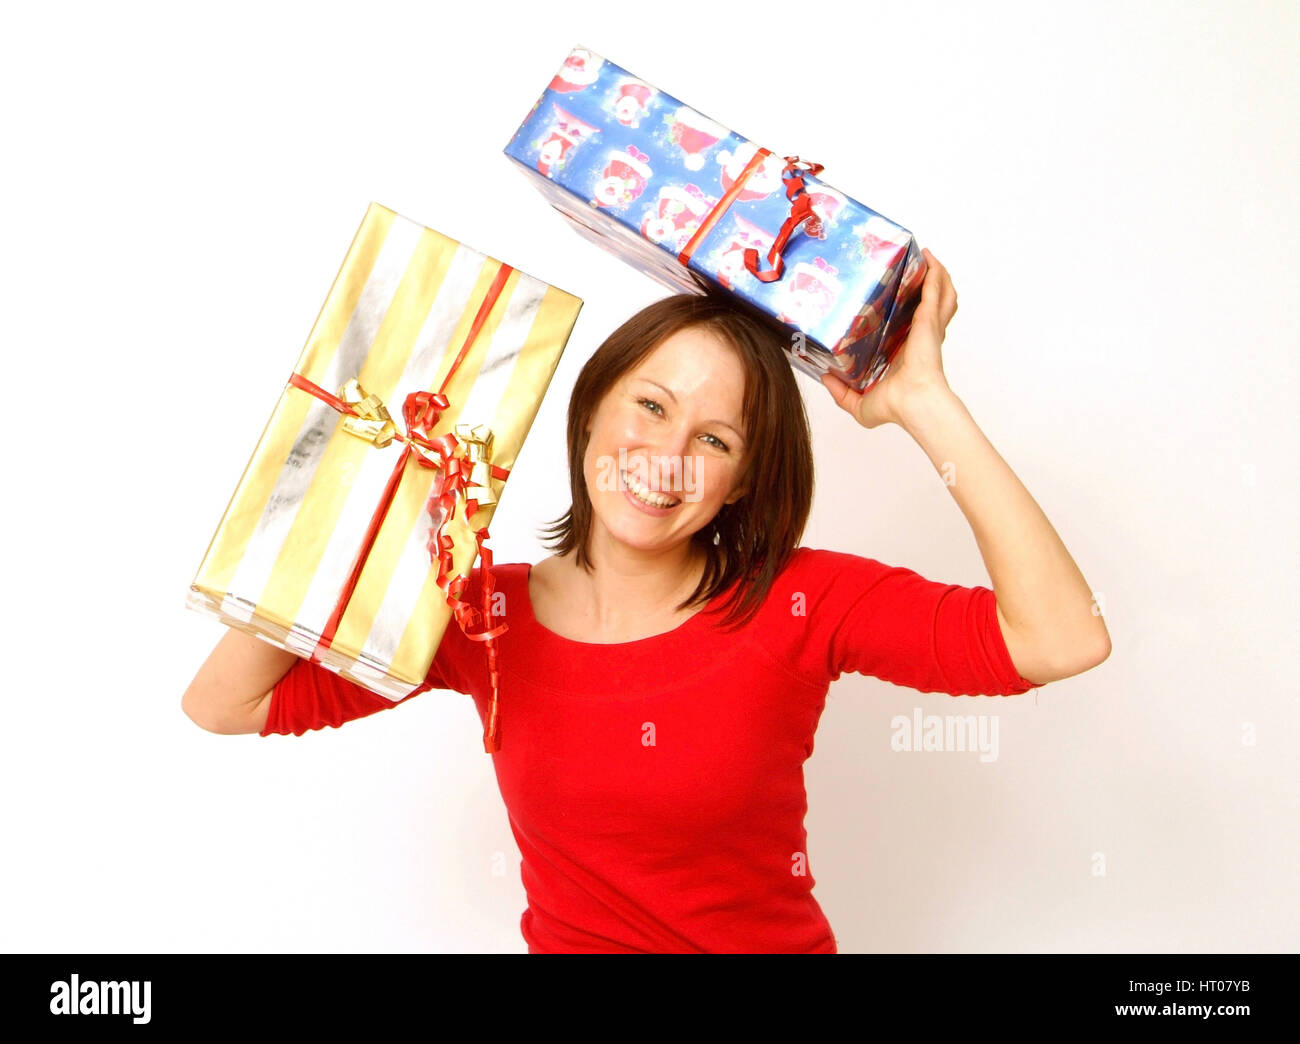 Frau mit Weihnachtsgeschenken - woman with christmas presents Stock Photo